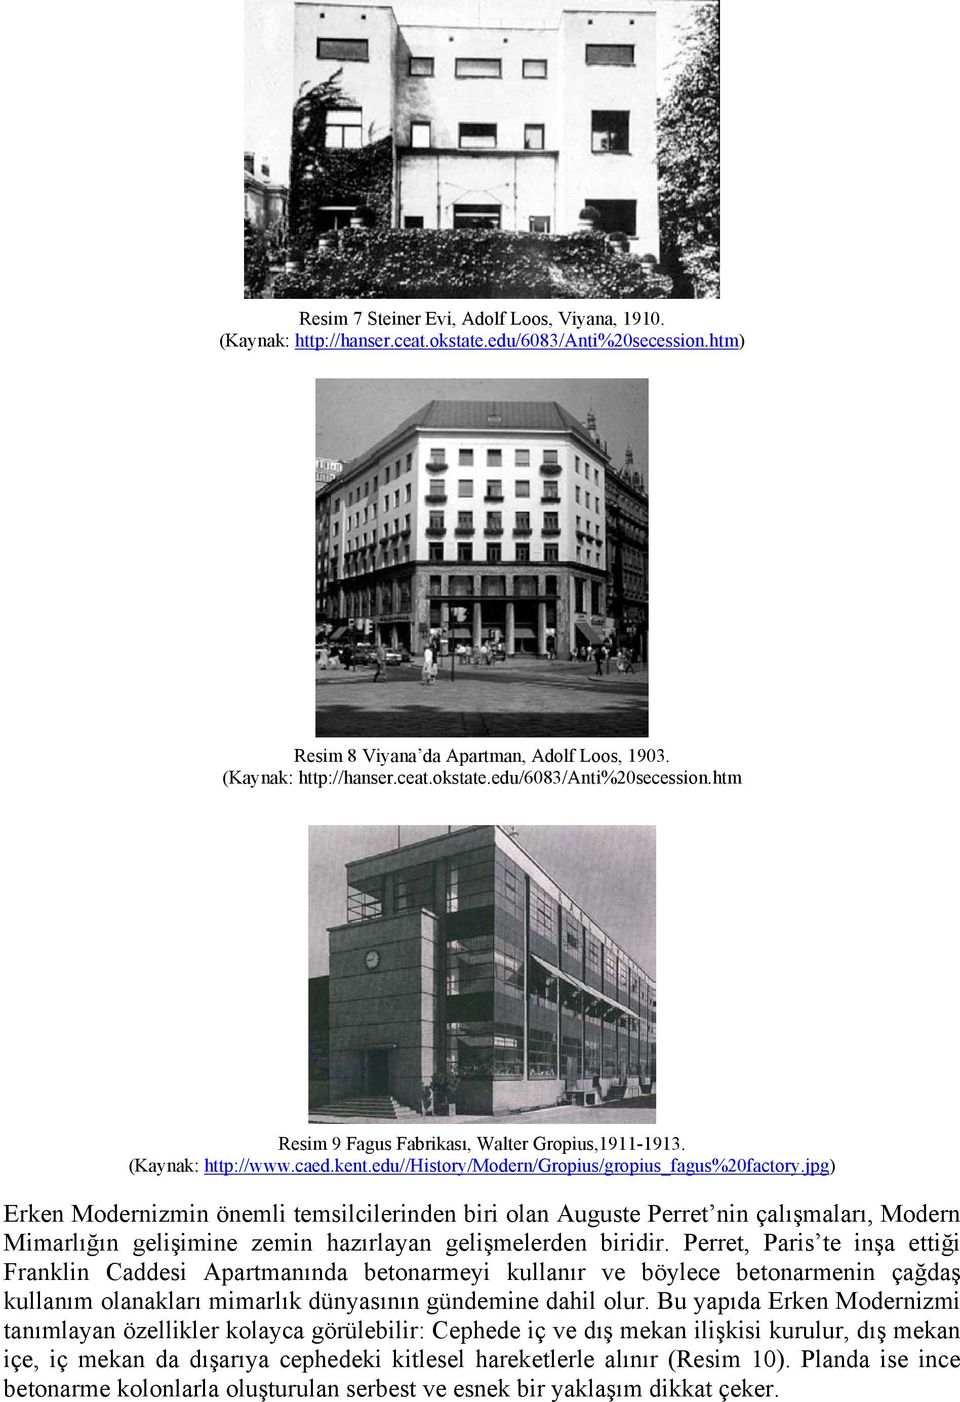 jpg) Erken Modernizmin önemli temsilcilerinden biri olan Auguste Perret nin çalışmaları, Modern Mimarlığın gelişimine zemin hazırlayan gelişmelerden biridir.